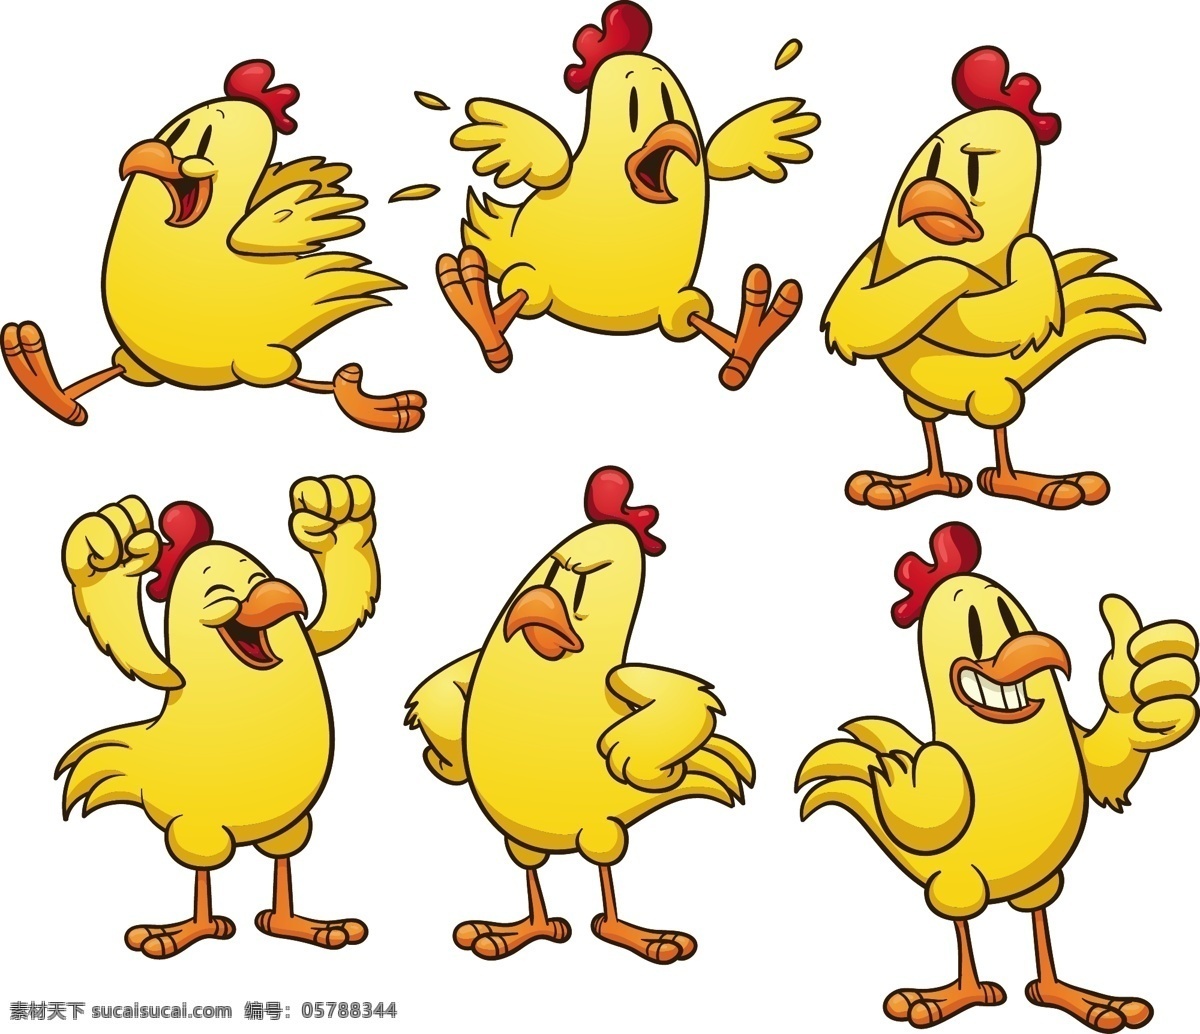 卡通公鸡表情 卡通 可爱 小鸡 公鸡 表情 幽默 滑稽 有趣 手绘 矢量 动物家禽家畜 家禽家畜 生物世界